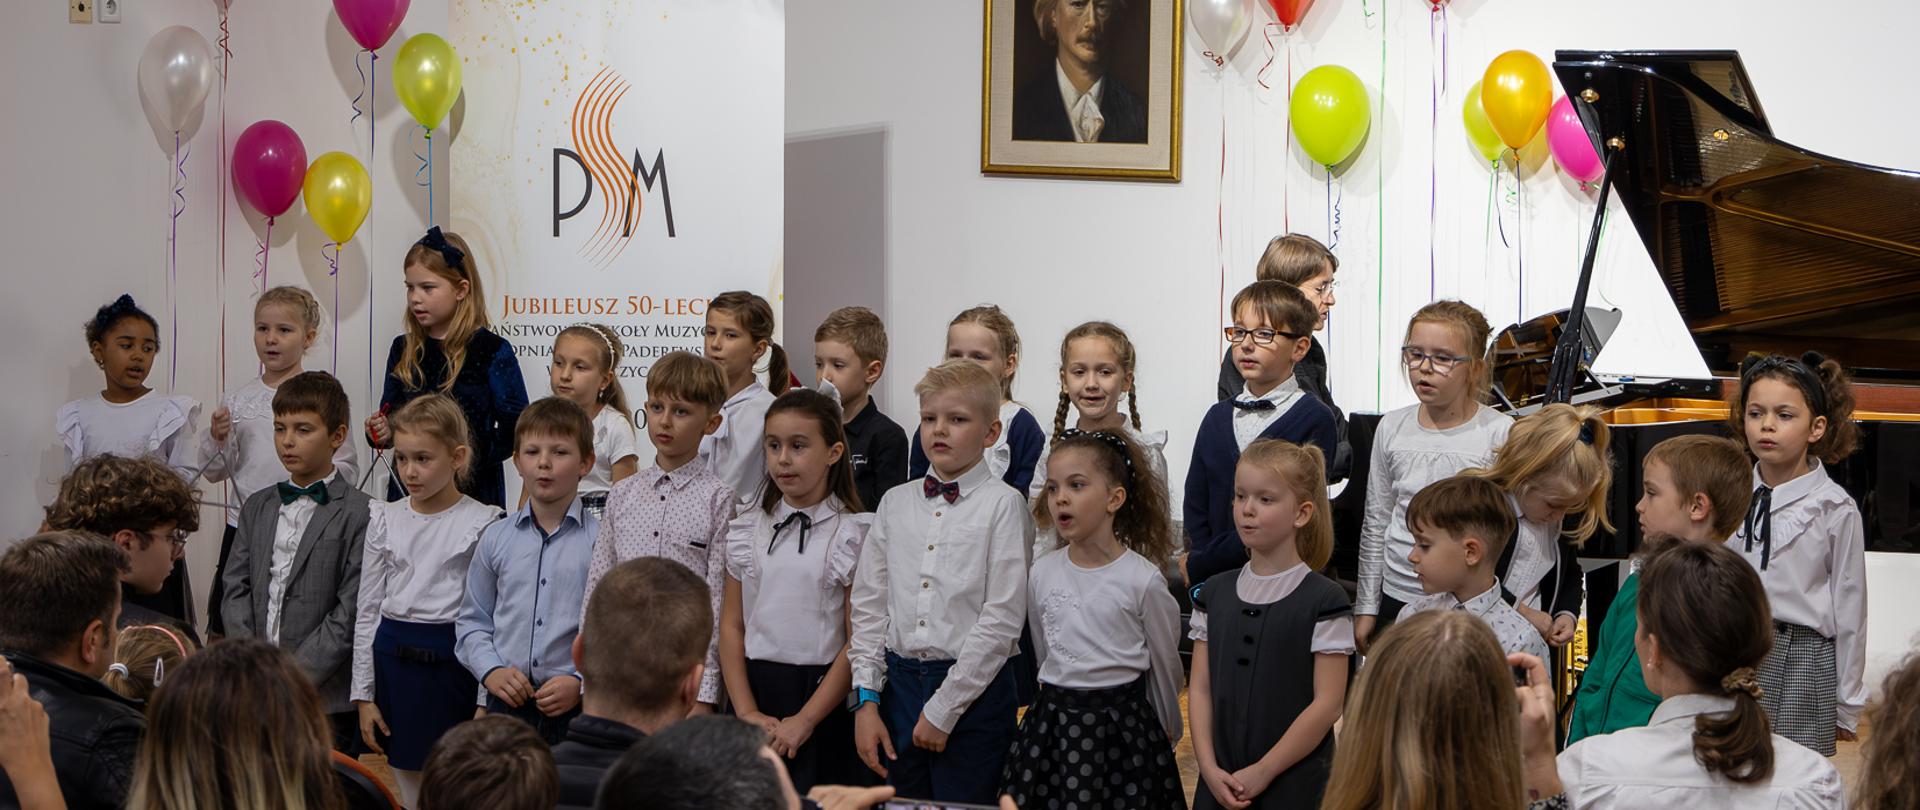 Pierwszoklasiści śpiewają wspólnie na scenie PSM w Głubczycach podczas uroczystości pasowania na ucznia. Przy fortepianie pani Małgorzata Meyse. W dolnej części zdjęcia widoczna publiczność.